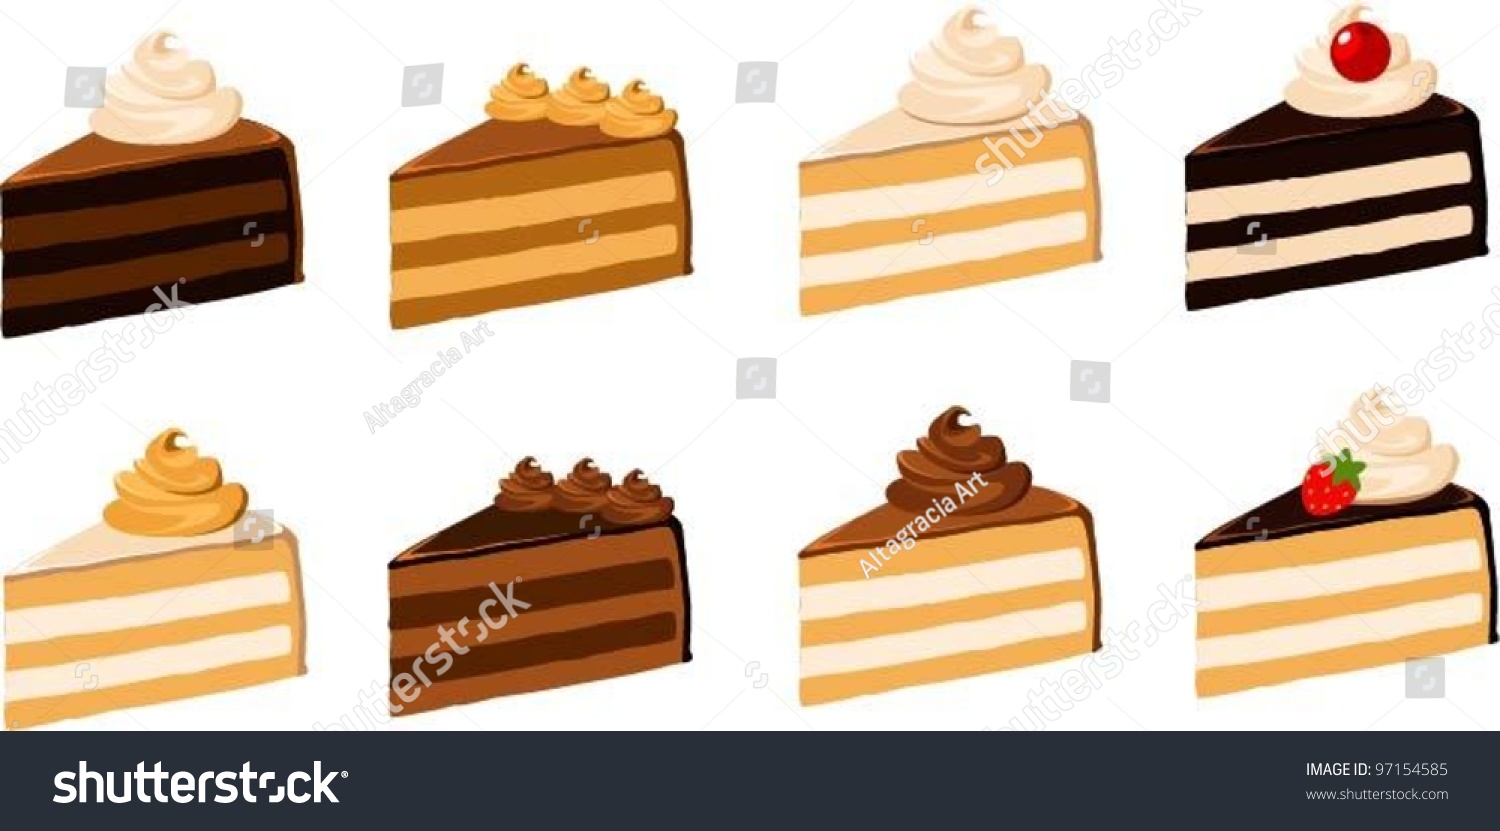 SVG of Vector illustration of 8 different kinds of cake slices. svg